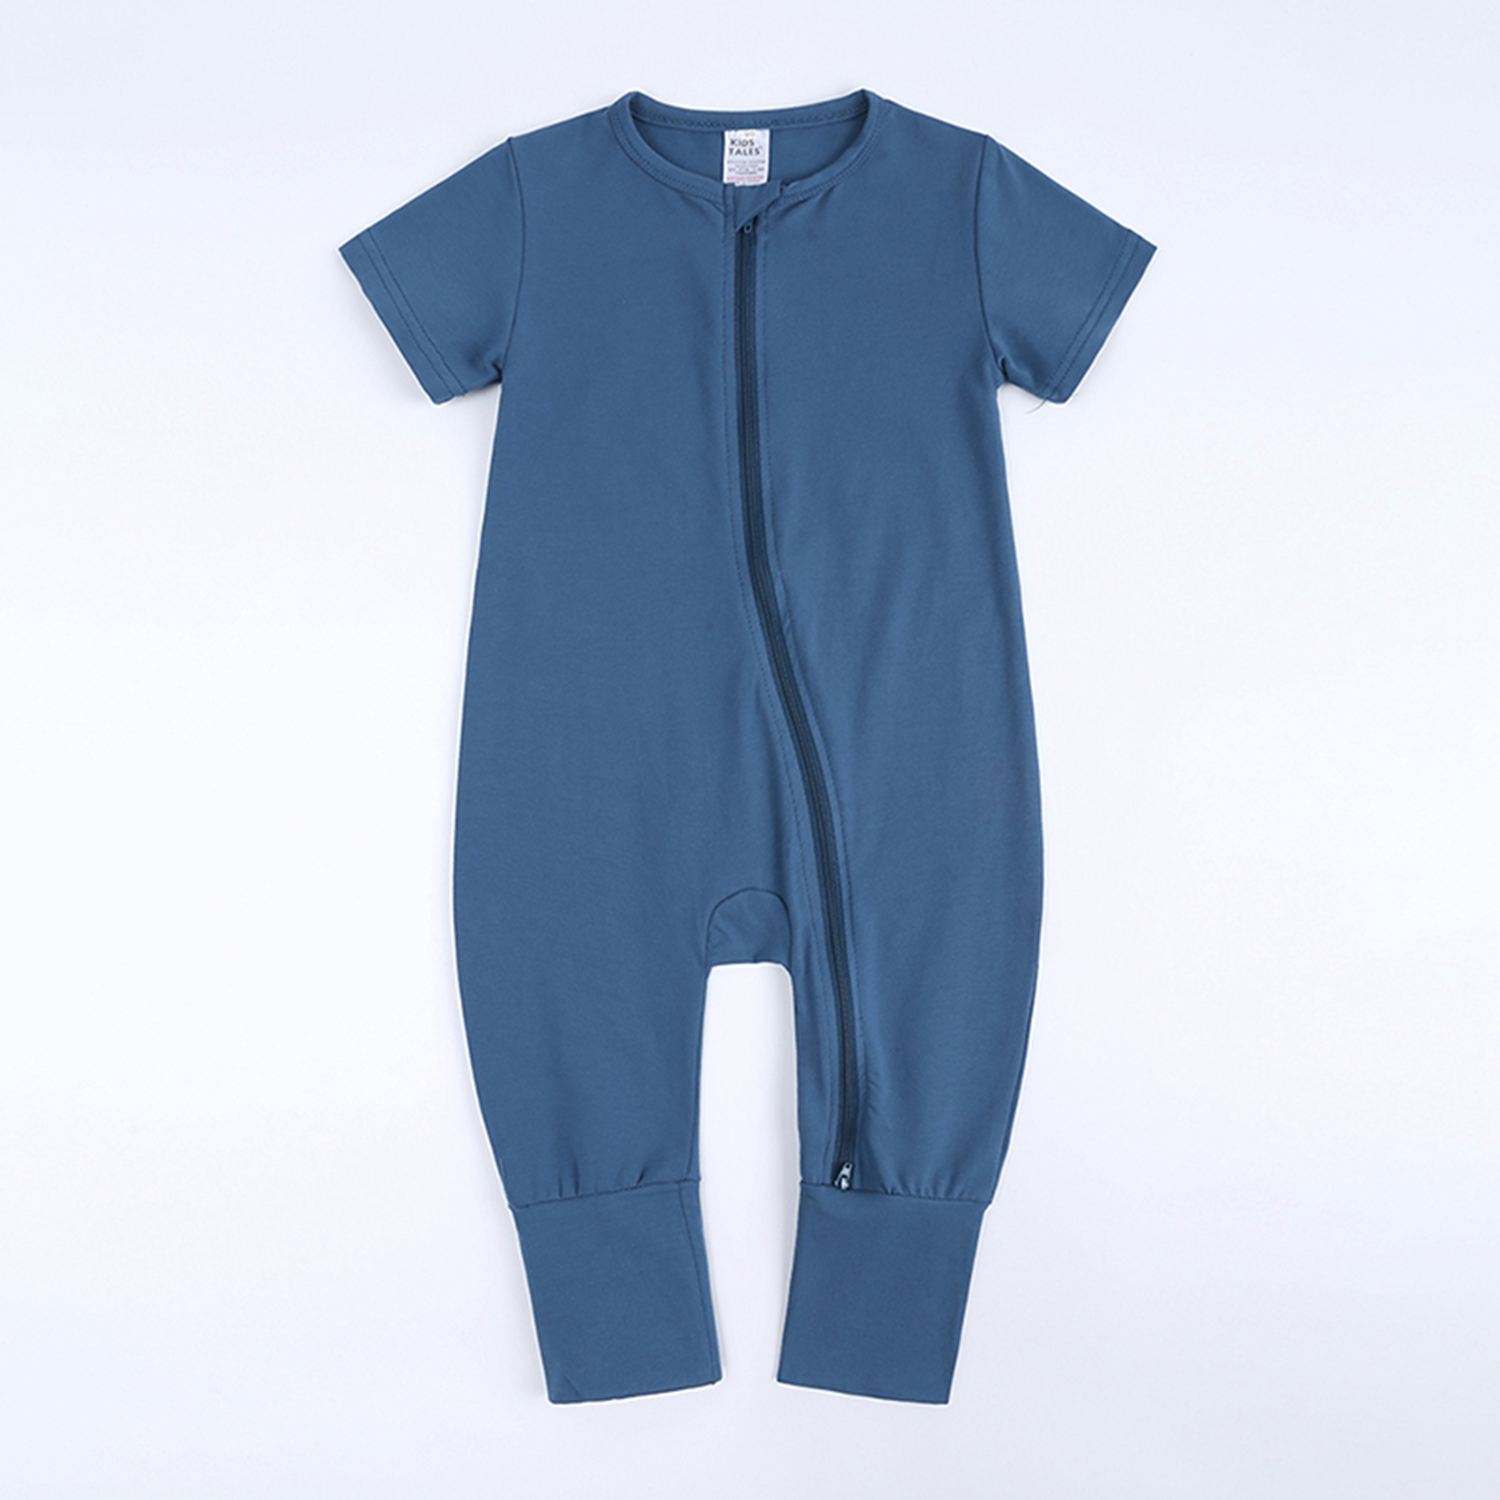 Kids Tales - Best baby romper blue 3-6 mo cotton double zipper infant bodysuit sleeper boy